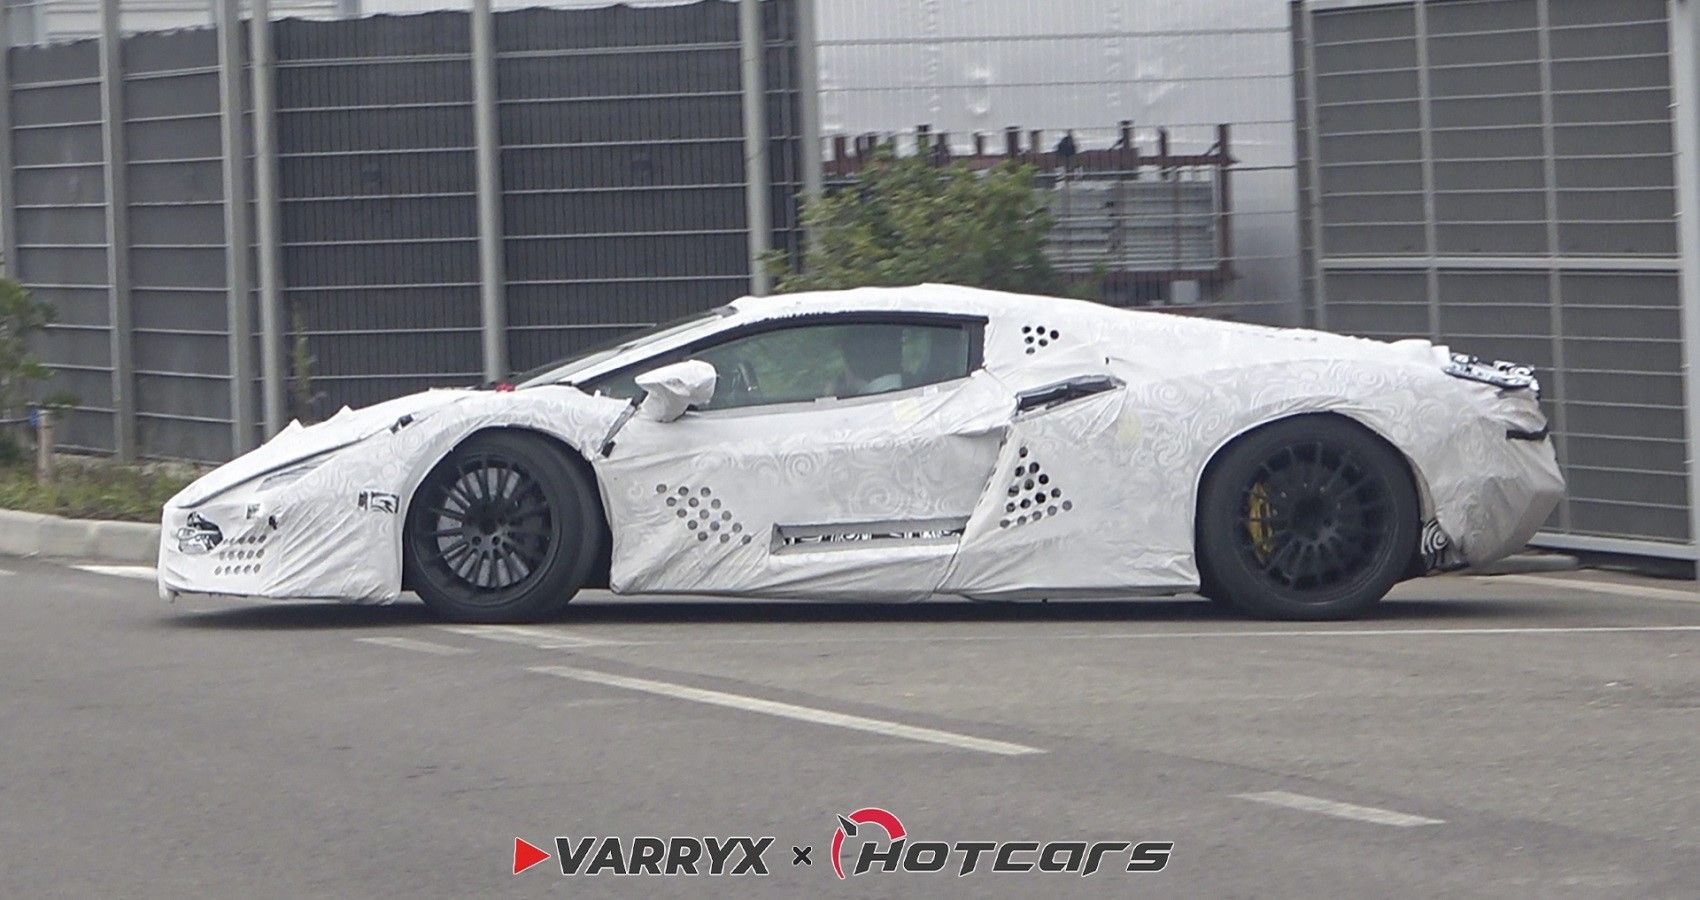 Lamborghini Protoype Mule exclusive shots by Varryx, side profile view